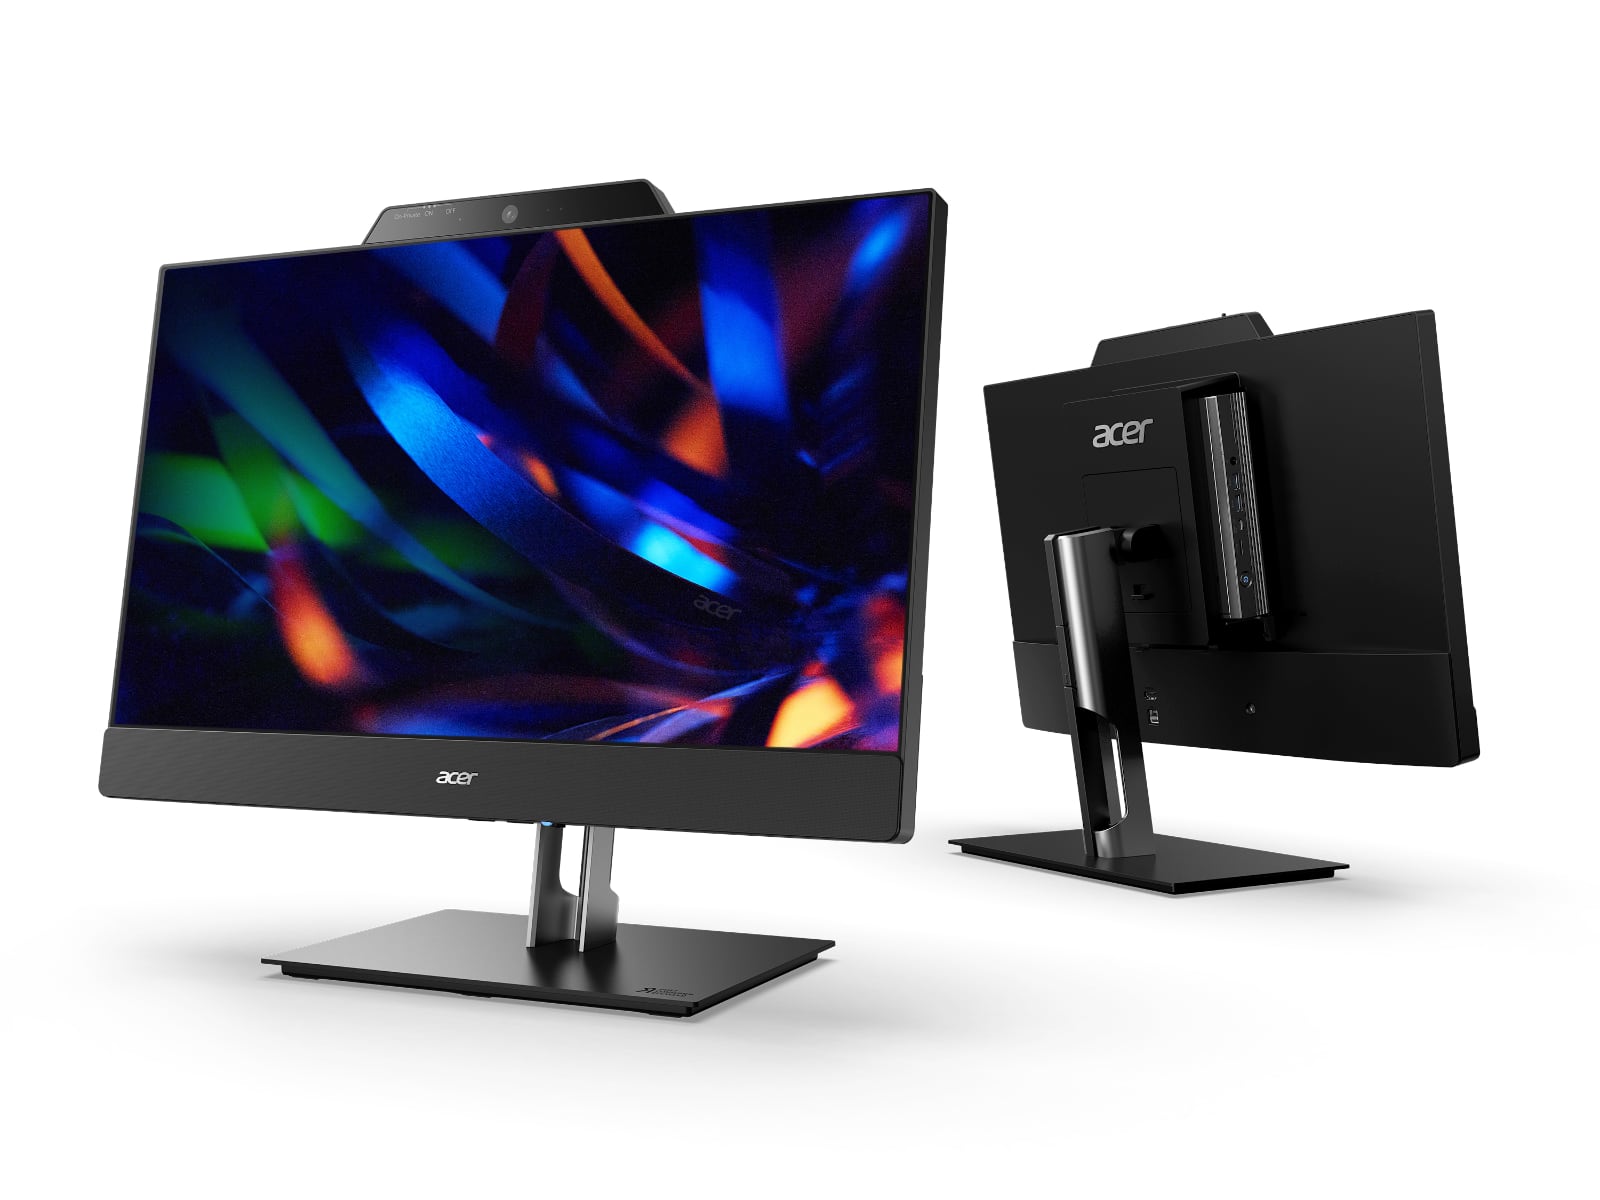 Acer aggiunge un monitor FHD 1080p da 24 pollici a tutti i nuovi Chromebox CXI5 e ha realizzato la soluzione Add-In-One 24 a 610 euro-3